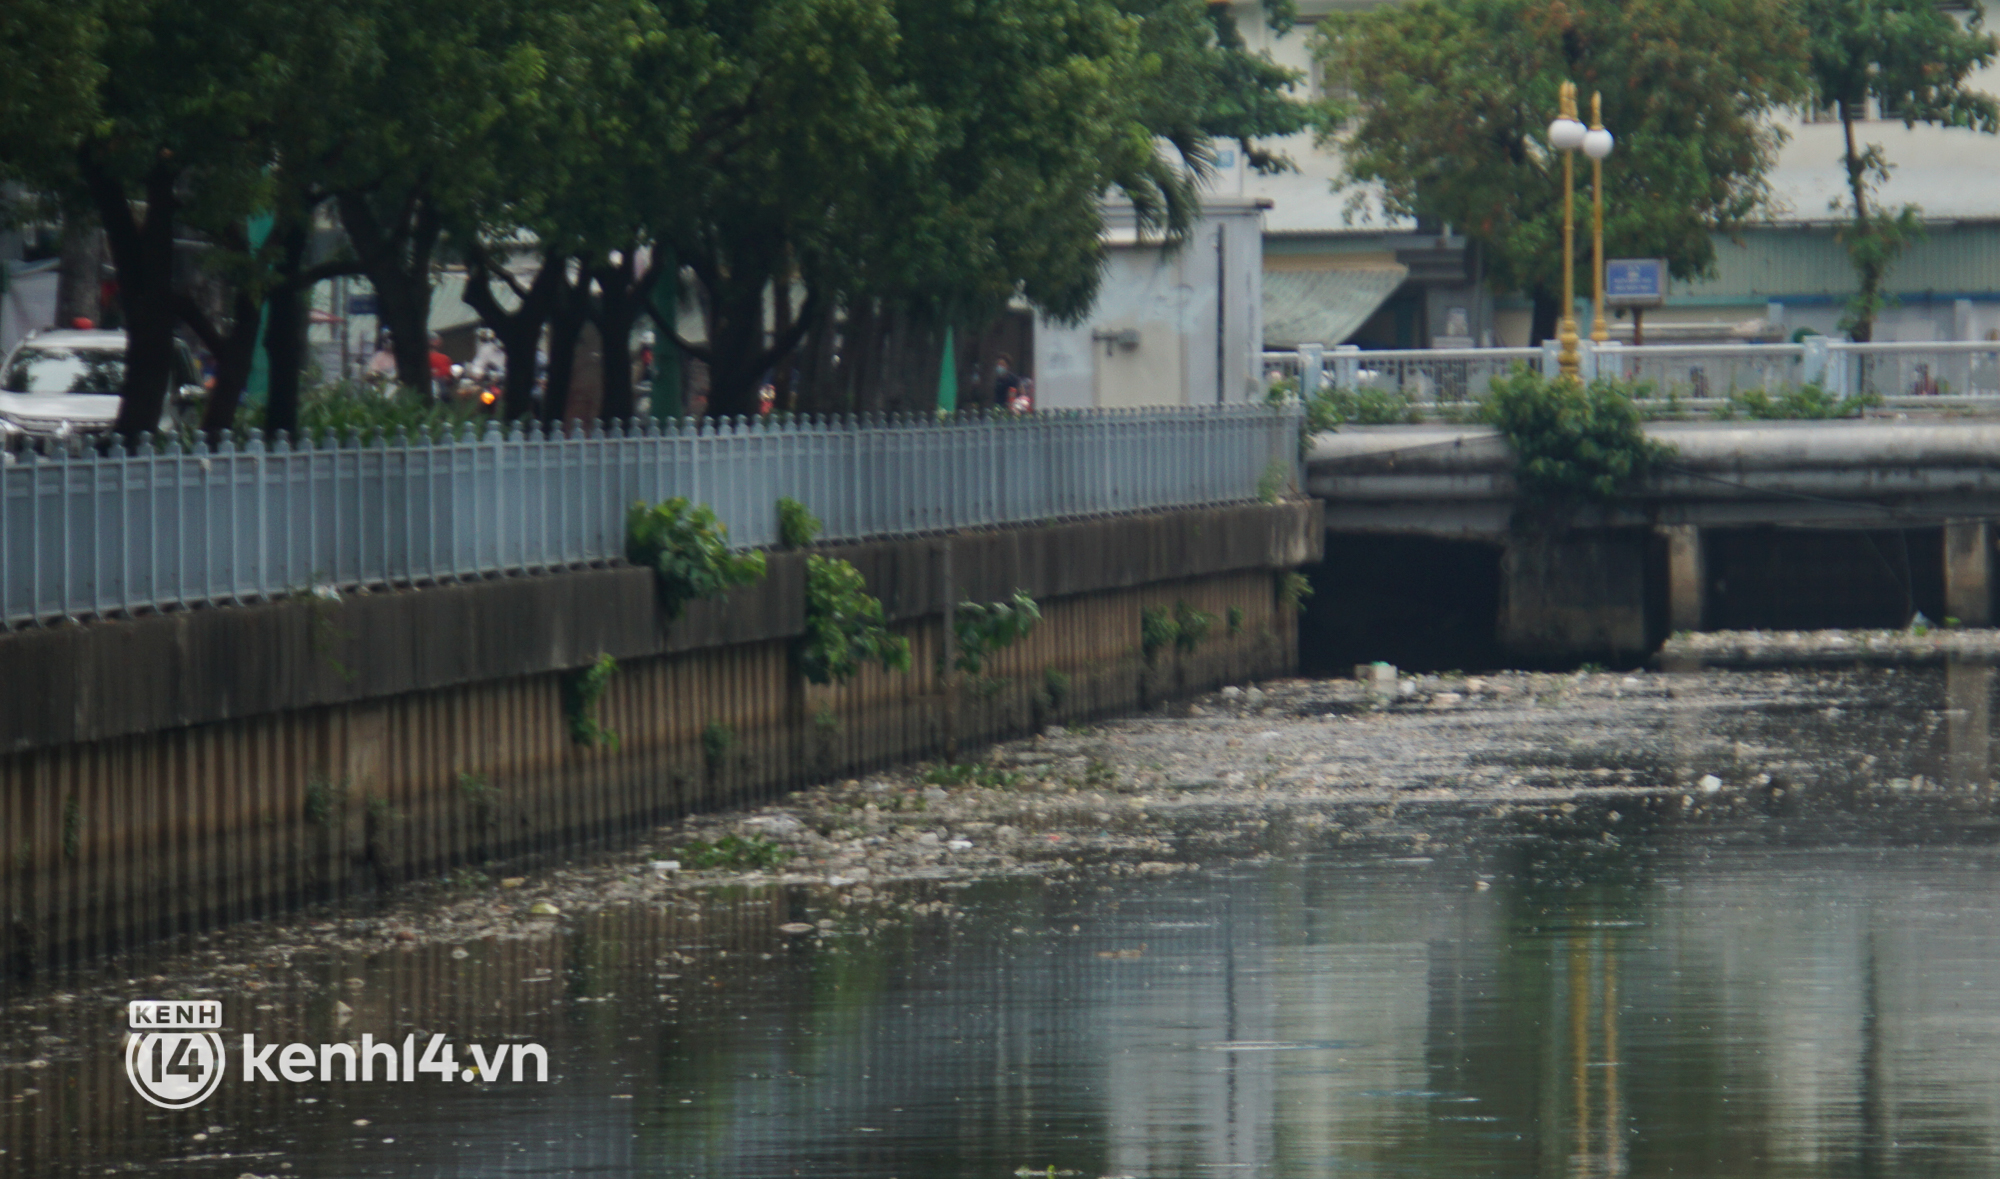 Cá chết lẫn trong rác thải nổi kín mặt kênh Nhiêu Lộc - Thị Nghè ở TP.HCM  - Ảnh 1.